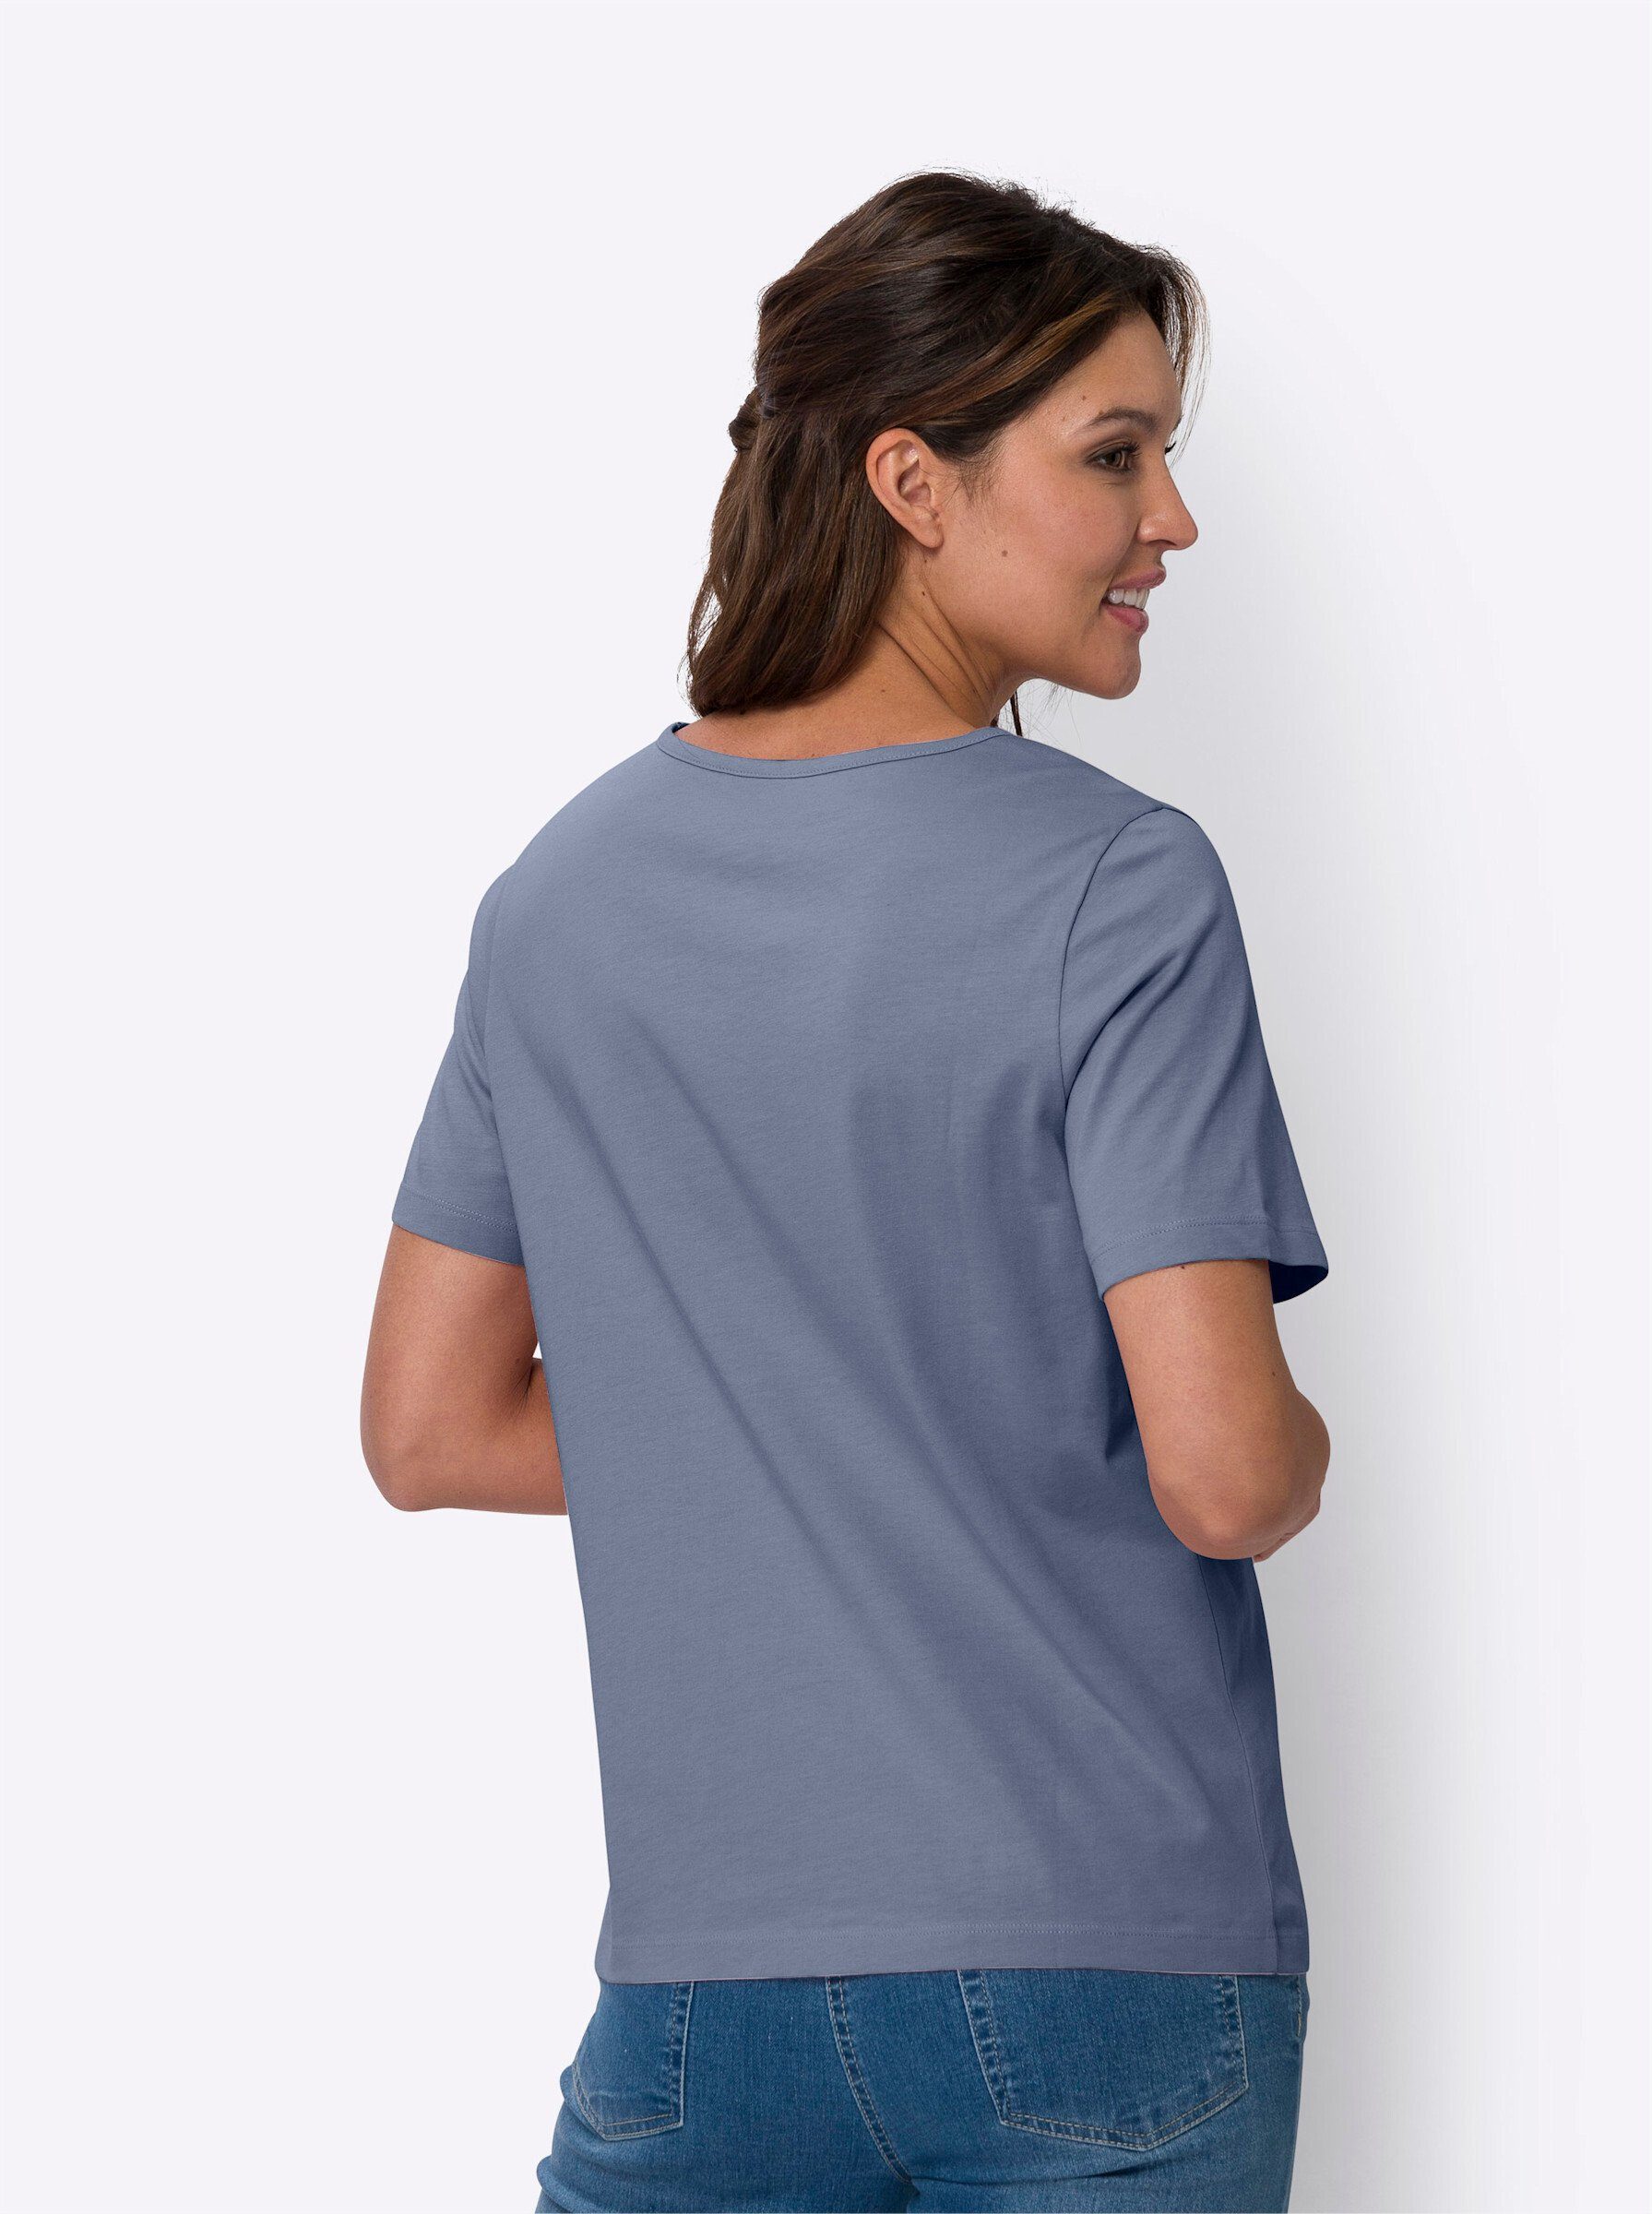 an! T-Shirt Sieh taubenblau-marine